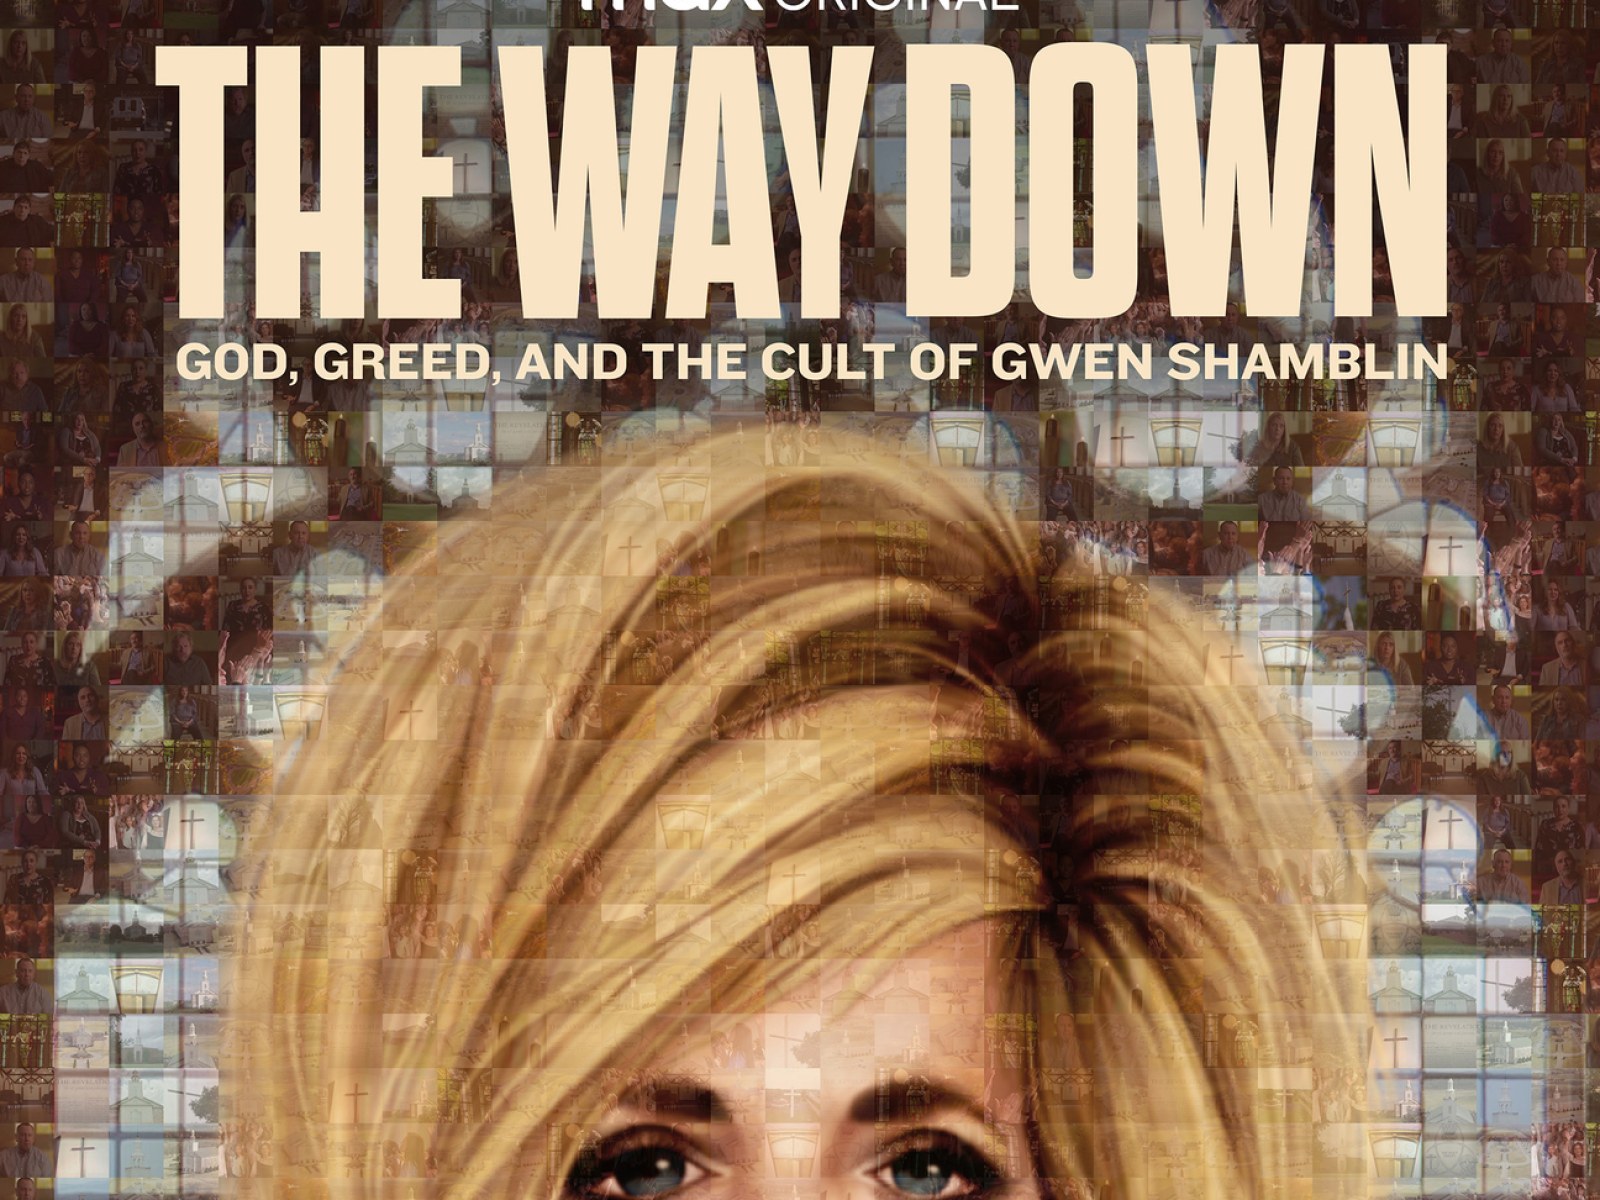 HBO Max Docuseries Explores Gwen Shamblin 'Cult